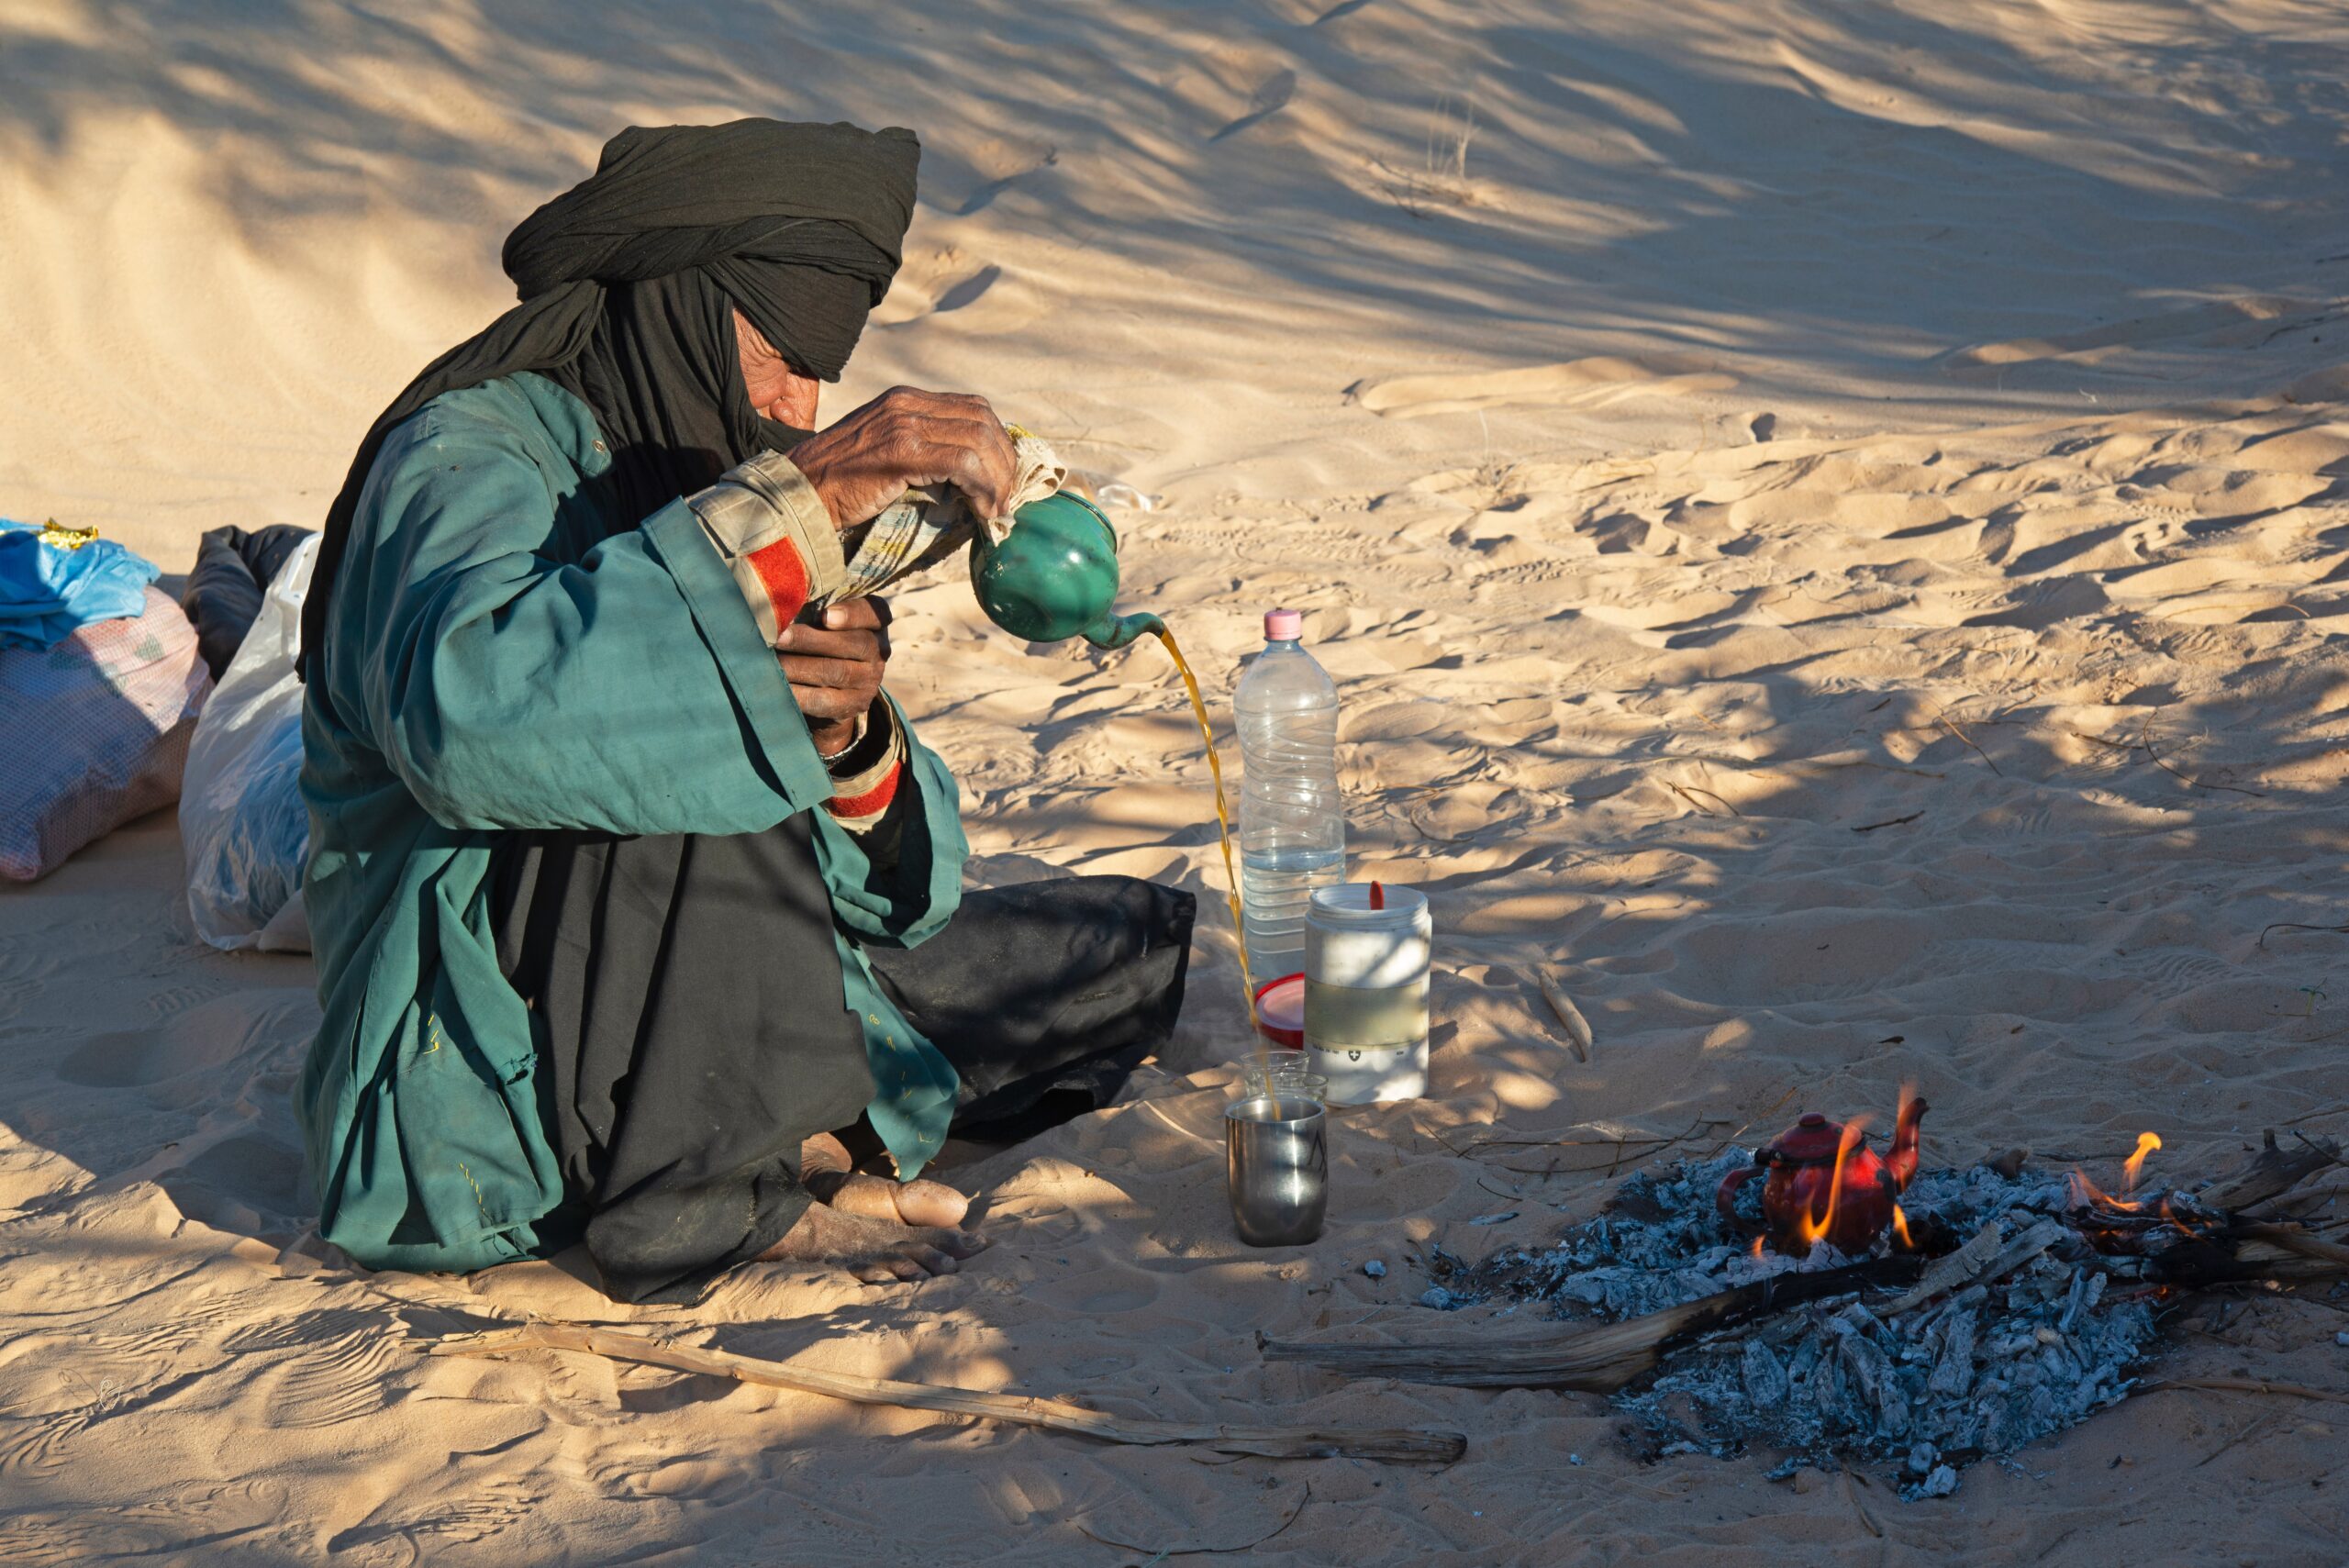 desert blues tuareg music